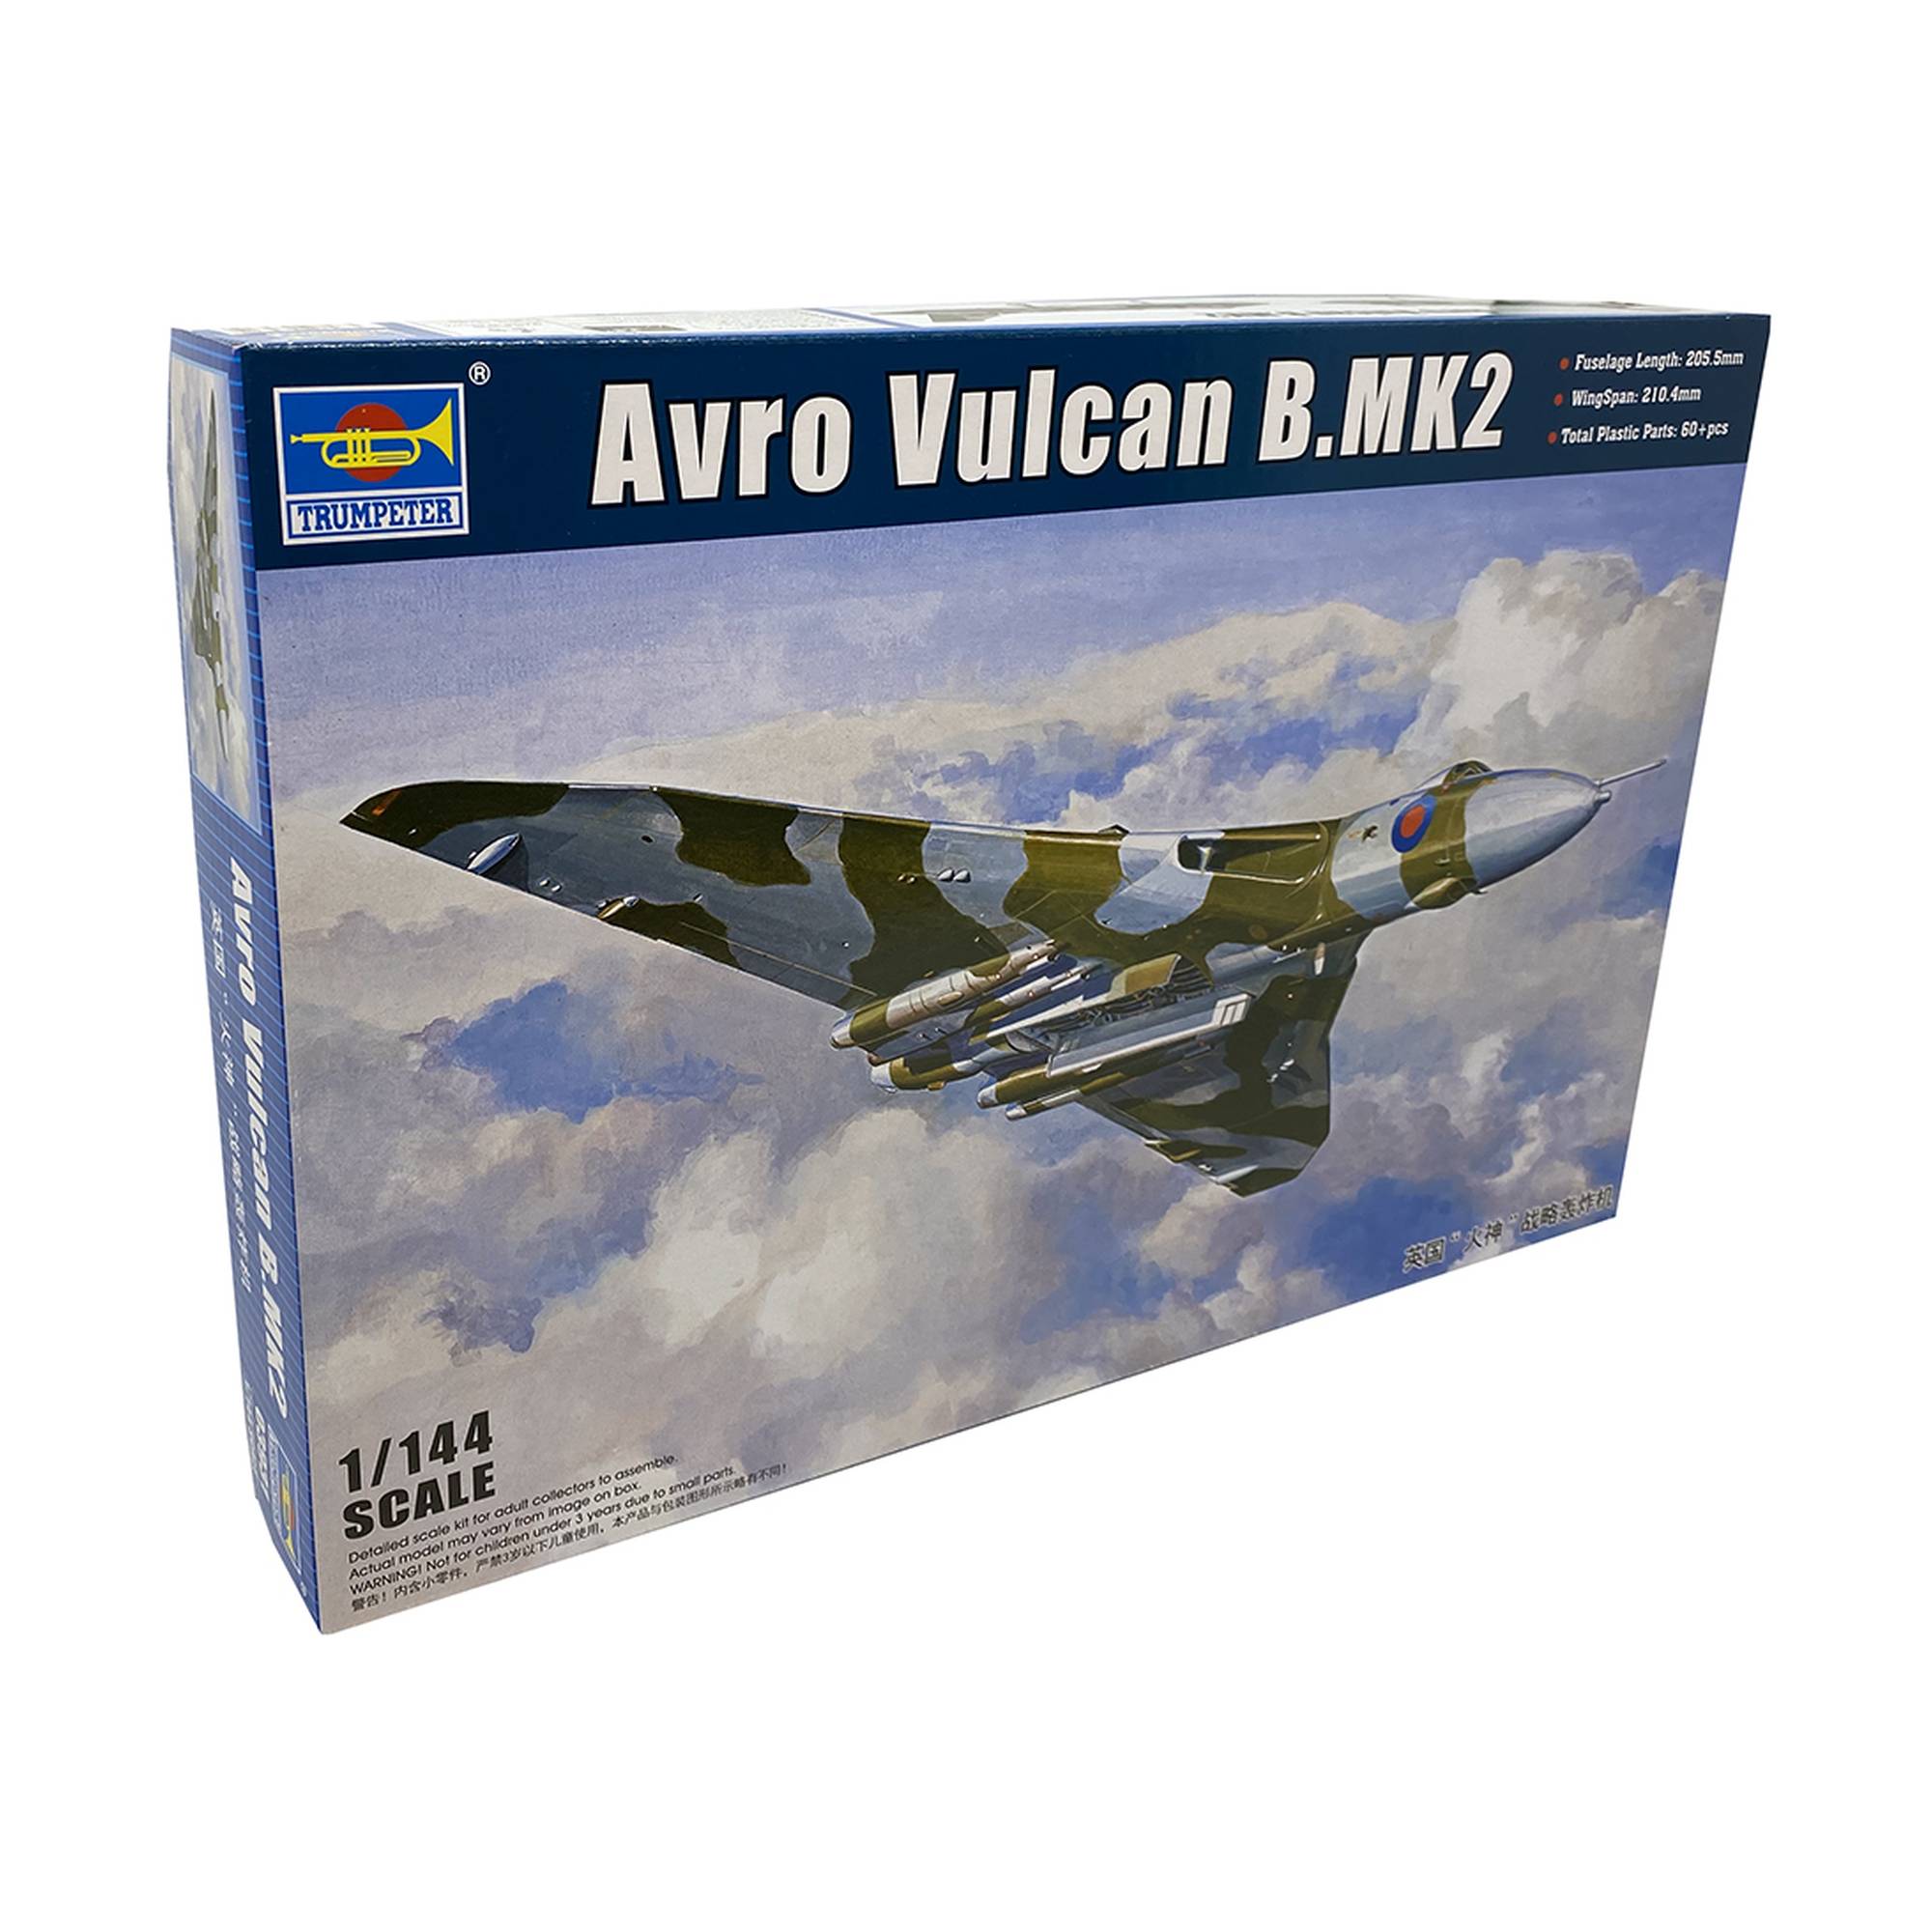 Trumpeter Avro Vulcan B.Mk2 Model Kit 1:144